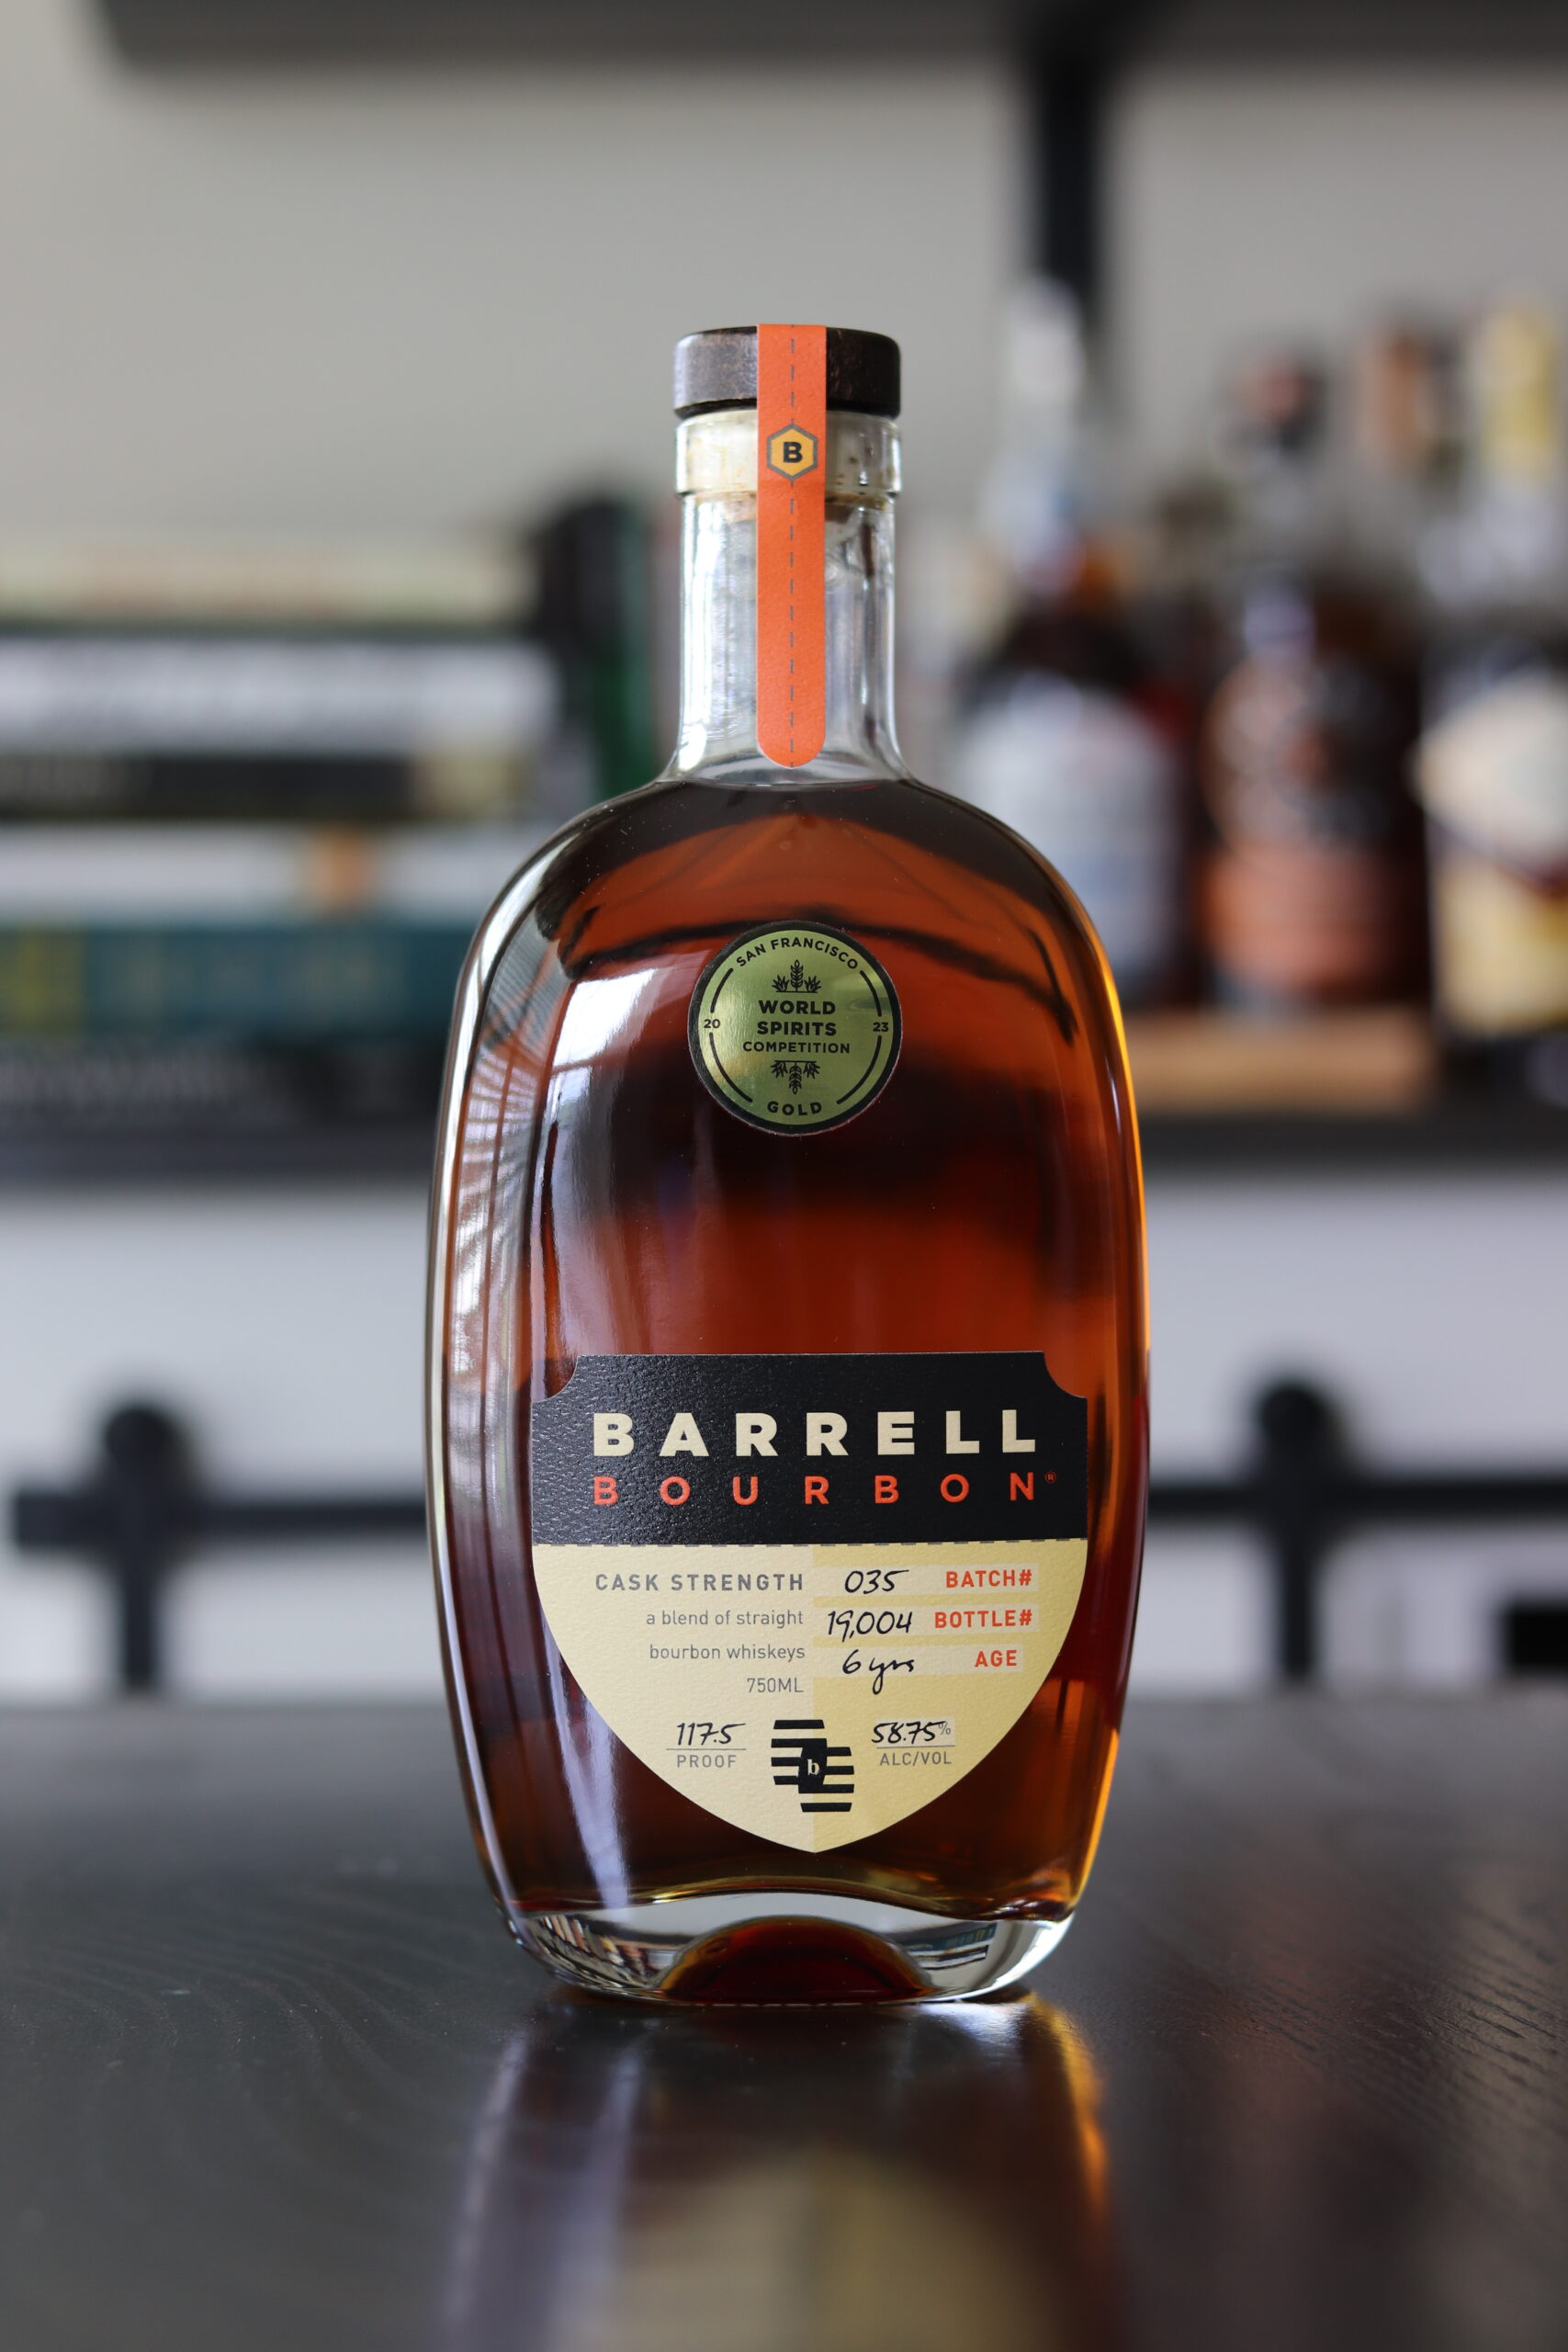 Bourbon Lens Reviews Barrell Craft Spirits Batch 035 Bourbon